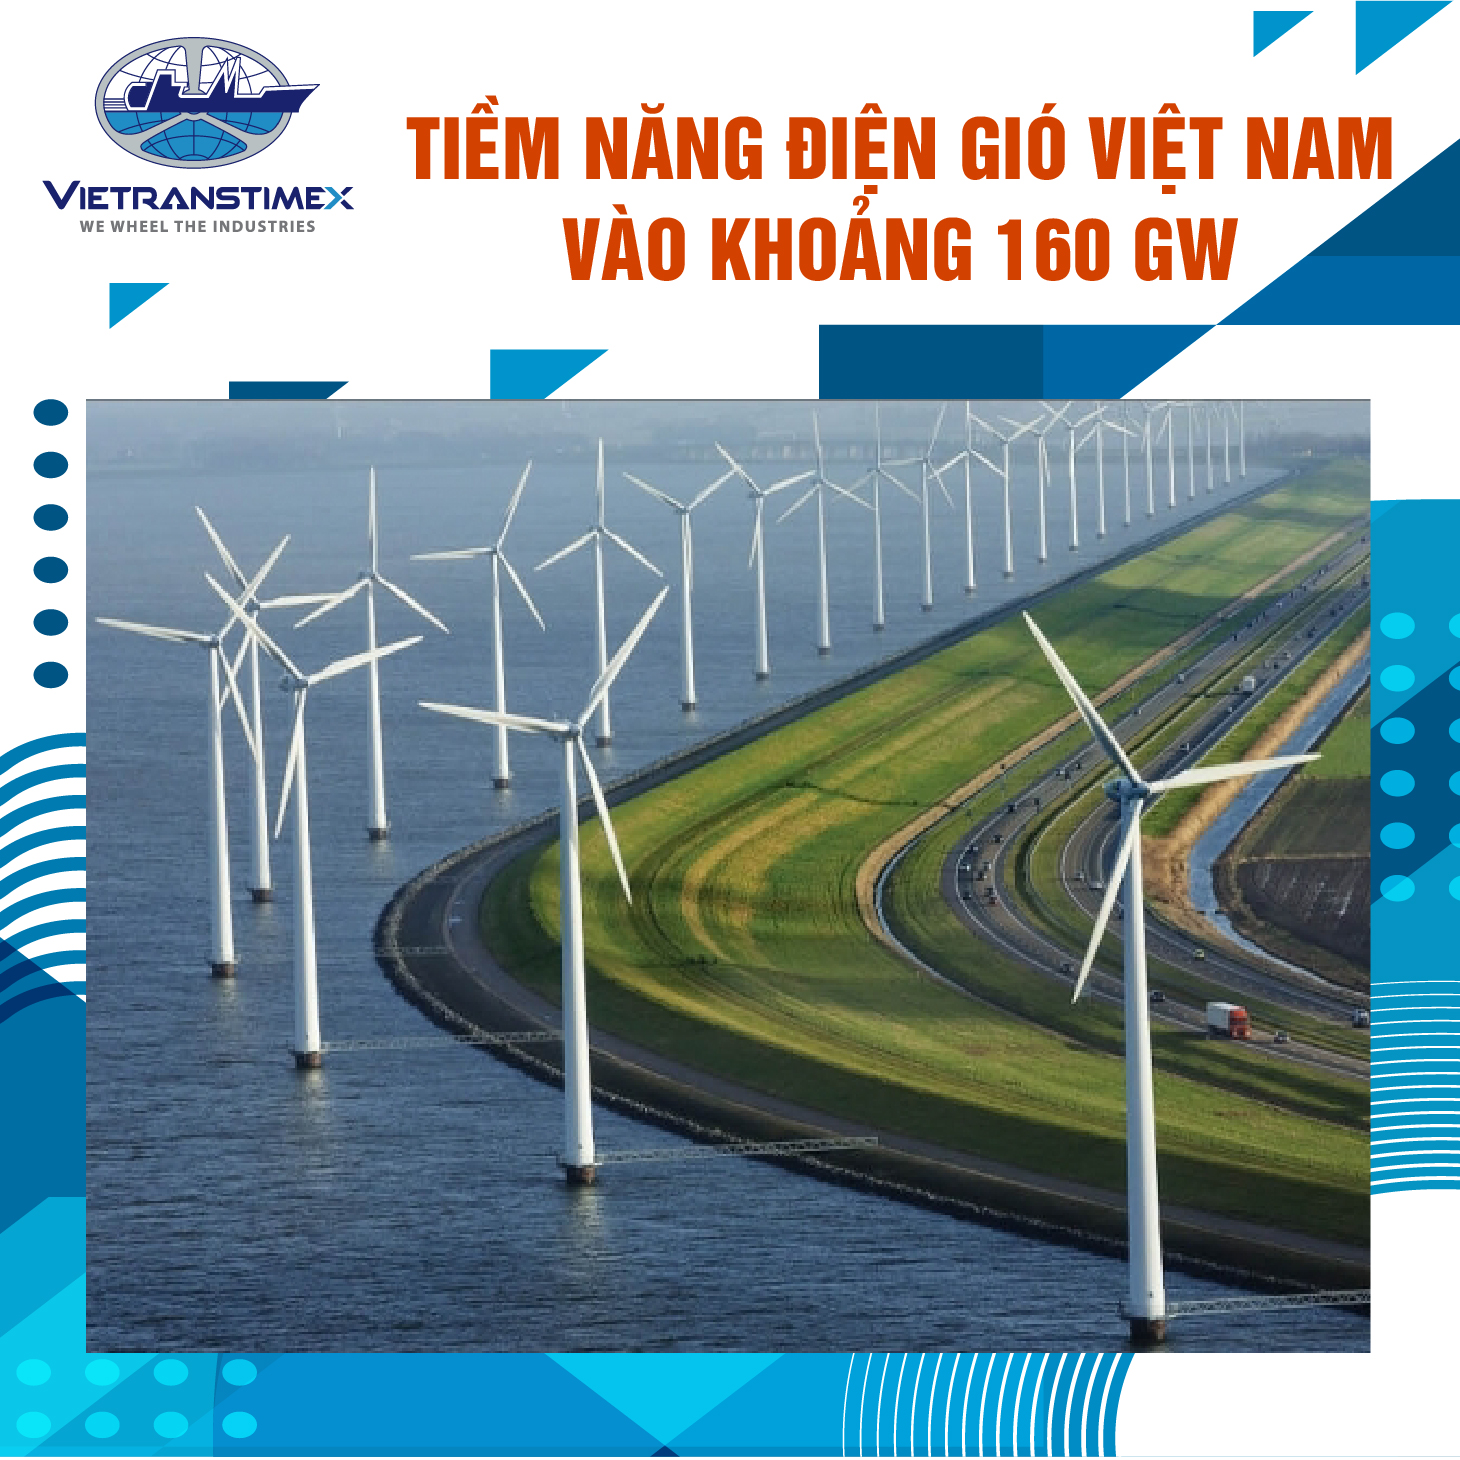 Tiềm Năng Điện Gió Việt Nam Vào Khoảng 160 GW